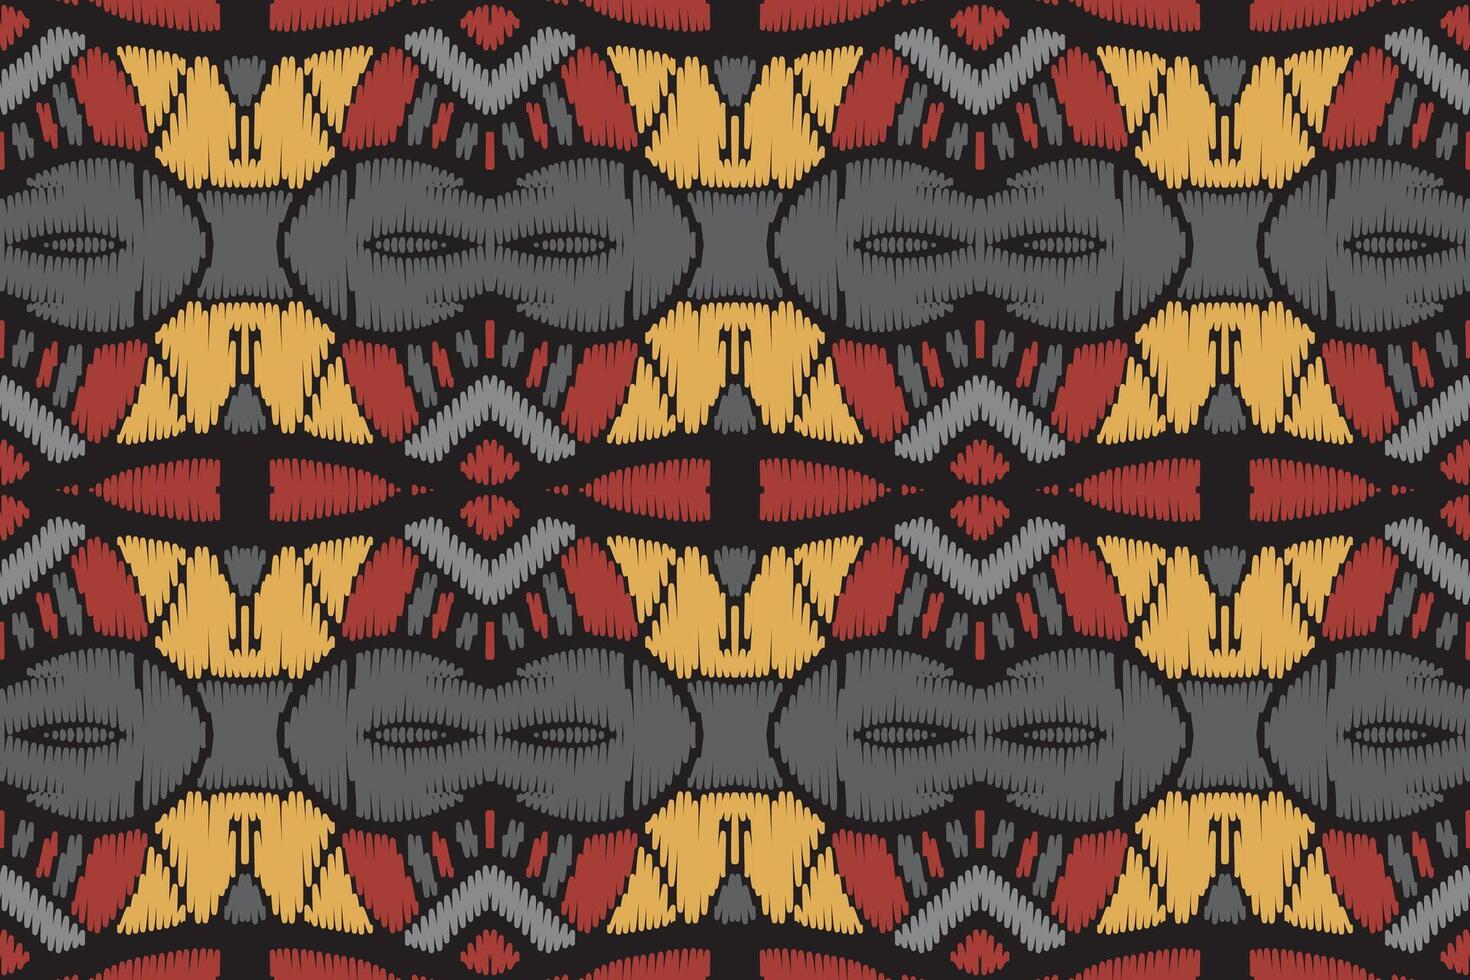 ikat mönster i tribal. geometriska etniska traditionella. mexikansk randig stil. design för bakgrund, tapeter, vektorillustration, tyg, kläder, batik, matta, broderi. vektor